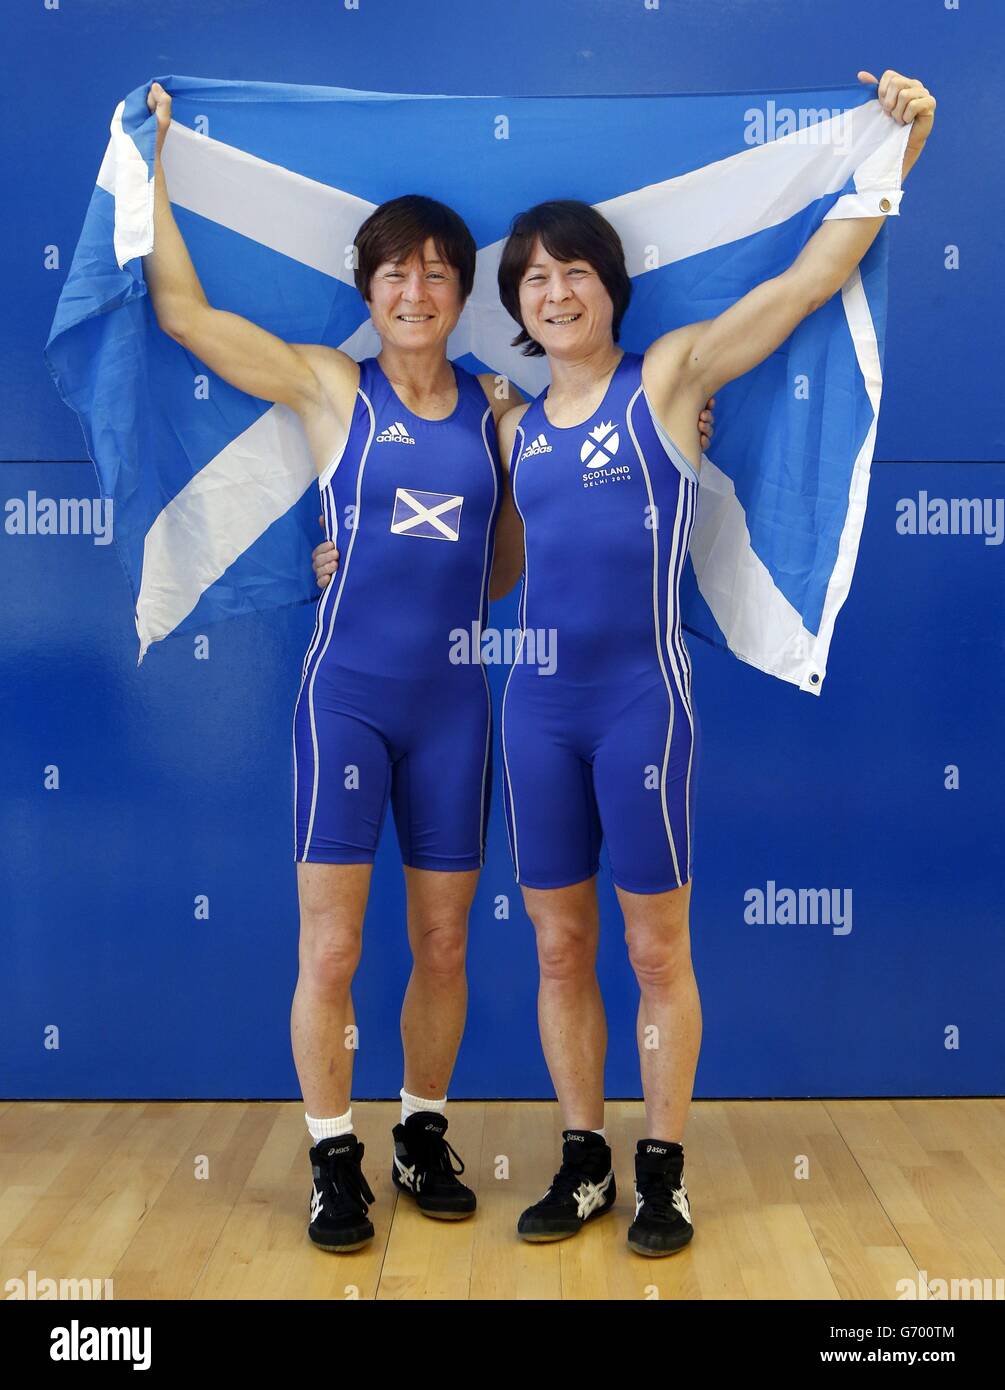 Glasgow 2014 Commonwealth Games Team Schottland Wrestler, Zwillingsschwestern Fiona Robertson (links) und Donna Robertson (rechts), während der Ankündigung im Olympia Boxing Gym, Glasgow. Stockfoto